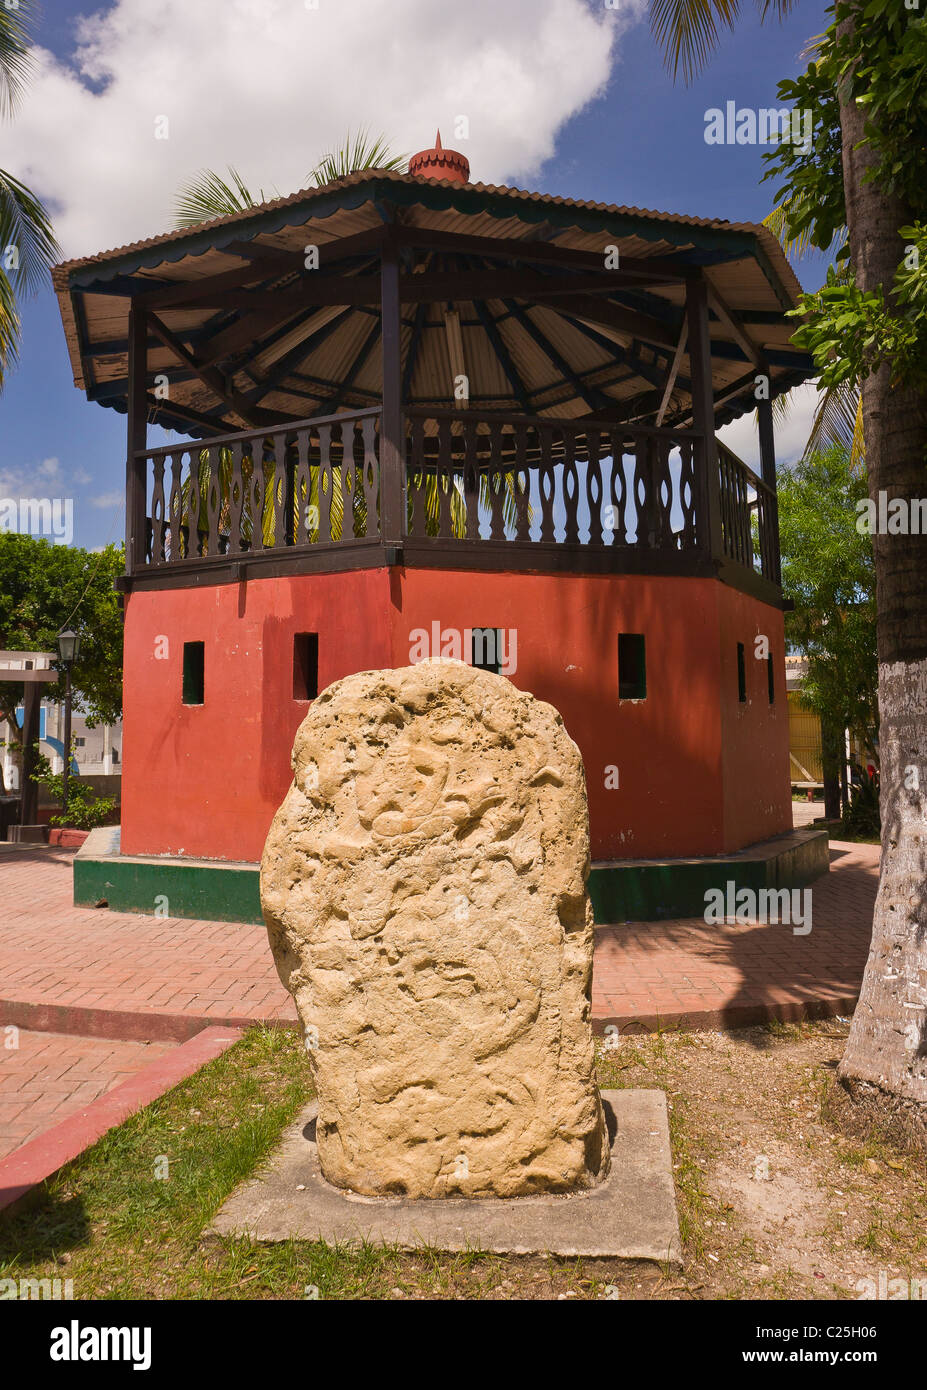 FLORES, GUATEMALA - Statua e gazebo, nella città coloniale di Flores. Foto Stock